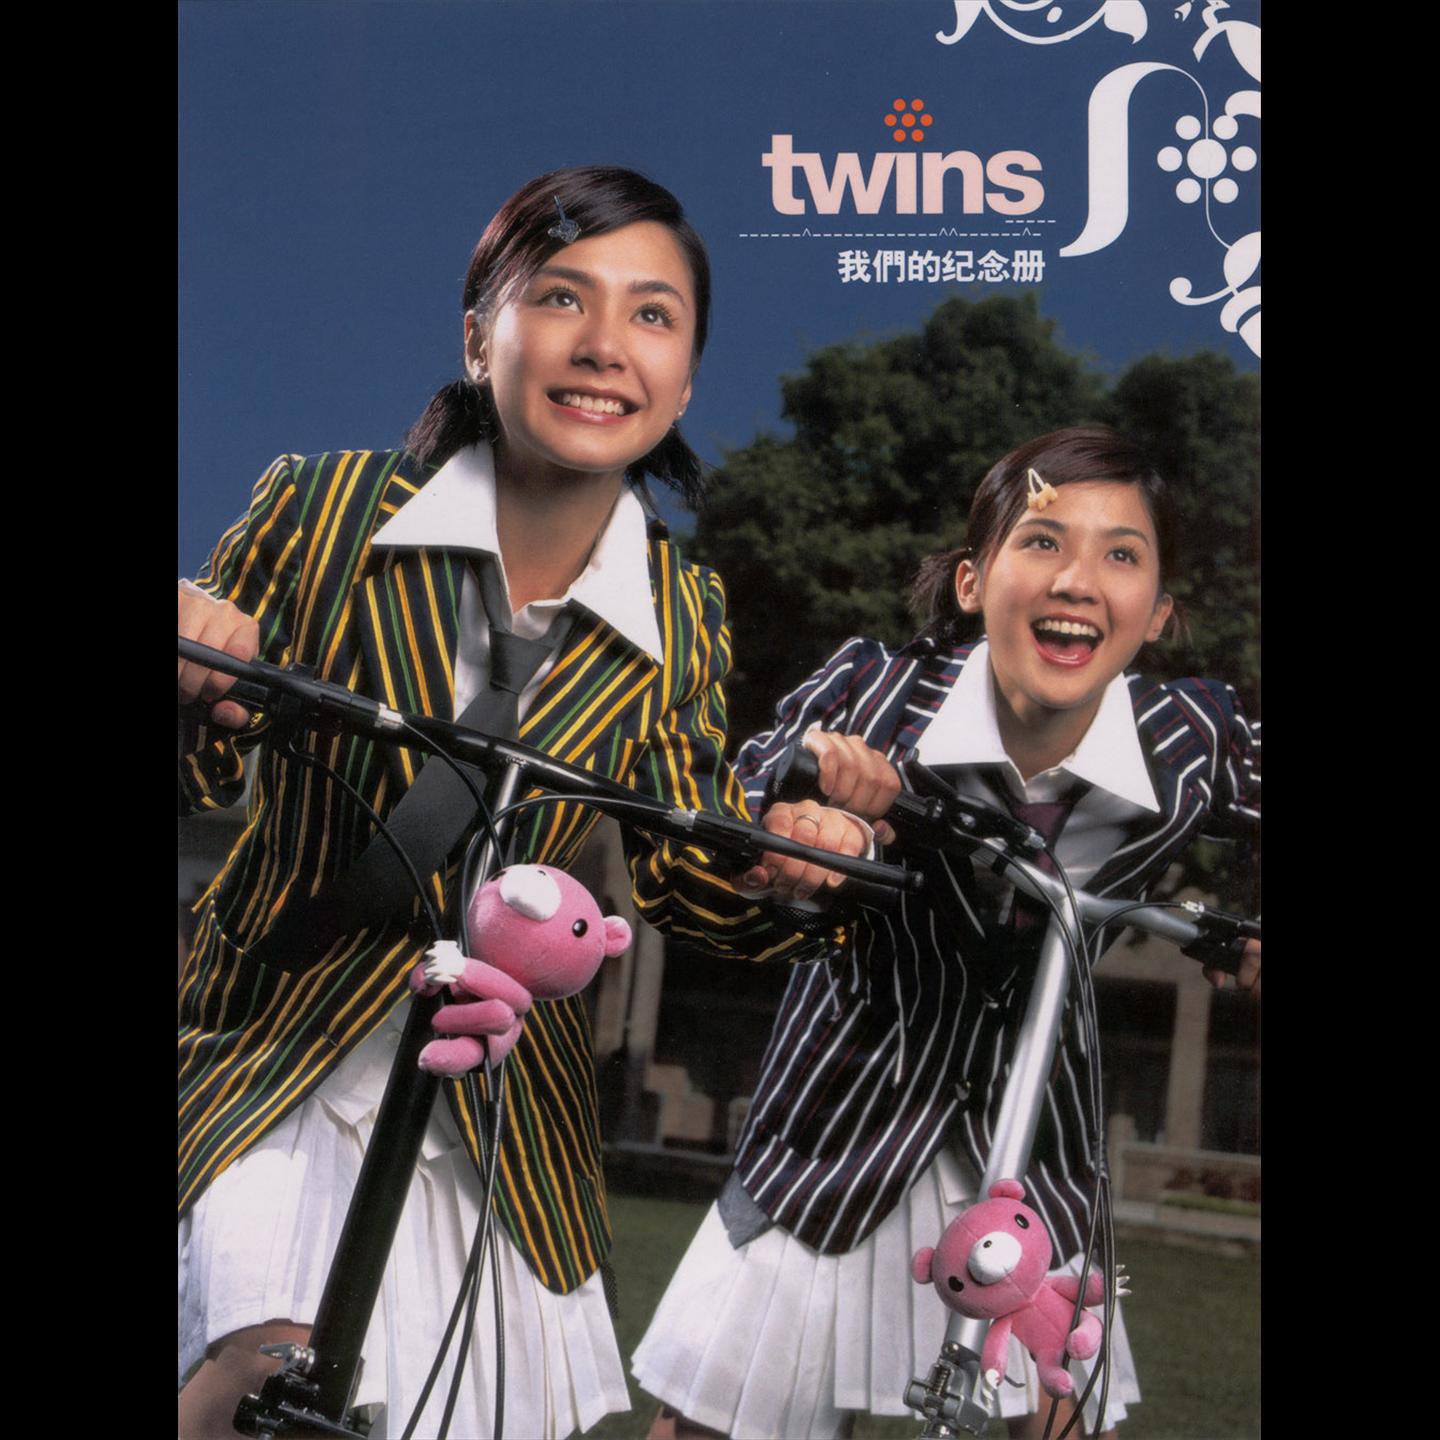 我们的纪念册歌词 歌手Twins-专辑我们的纪念册-单曲《我们的纪念册》LRC歌词下载